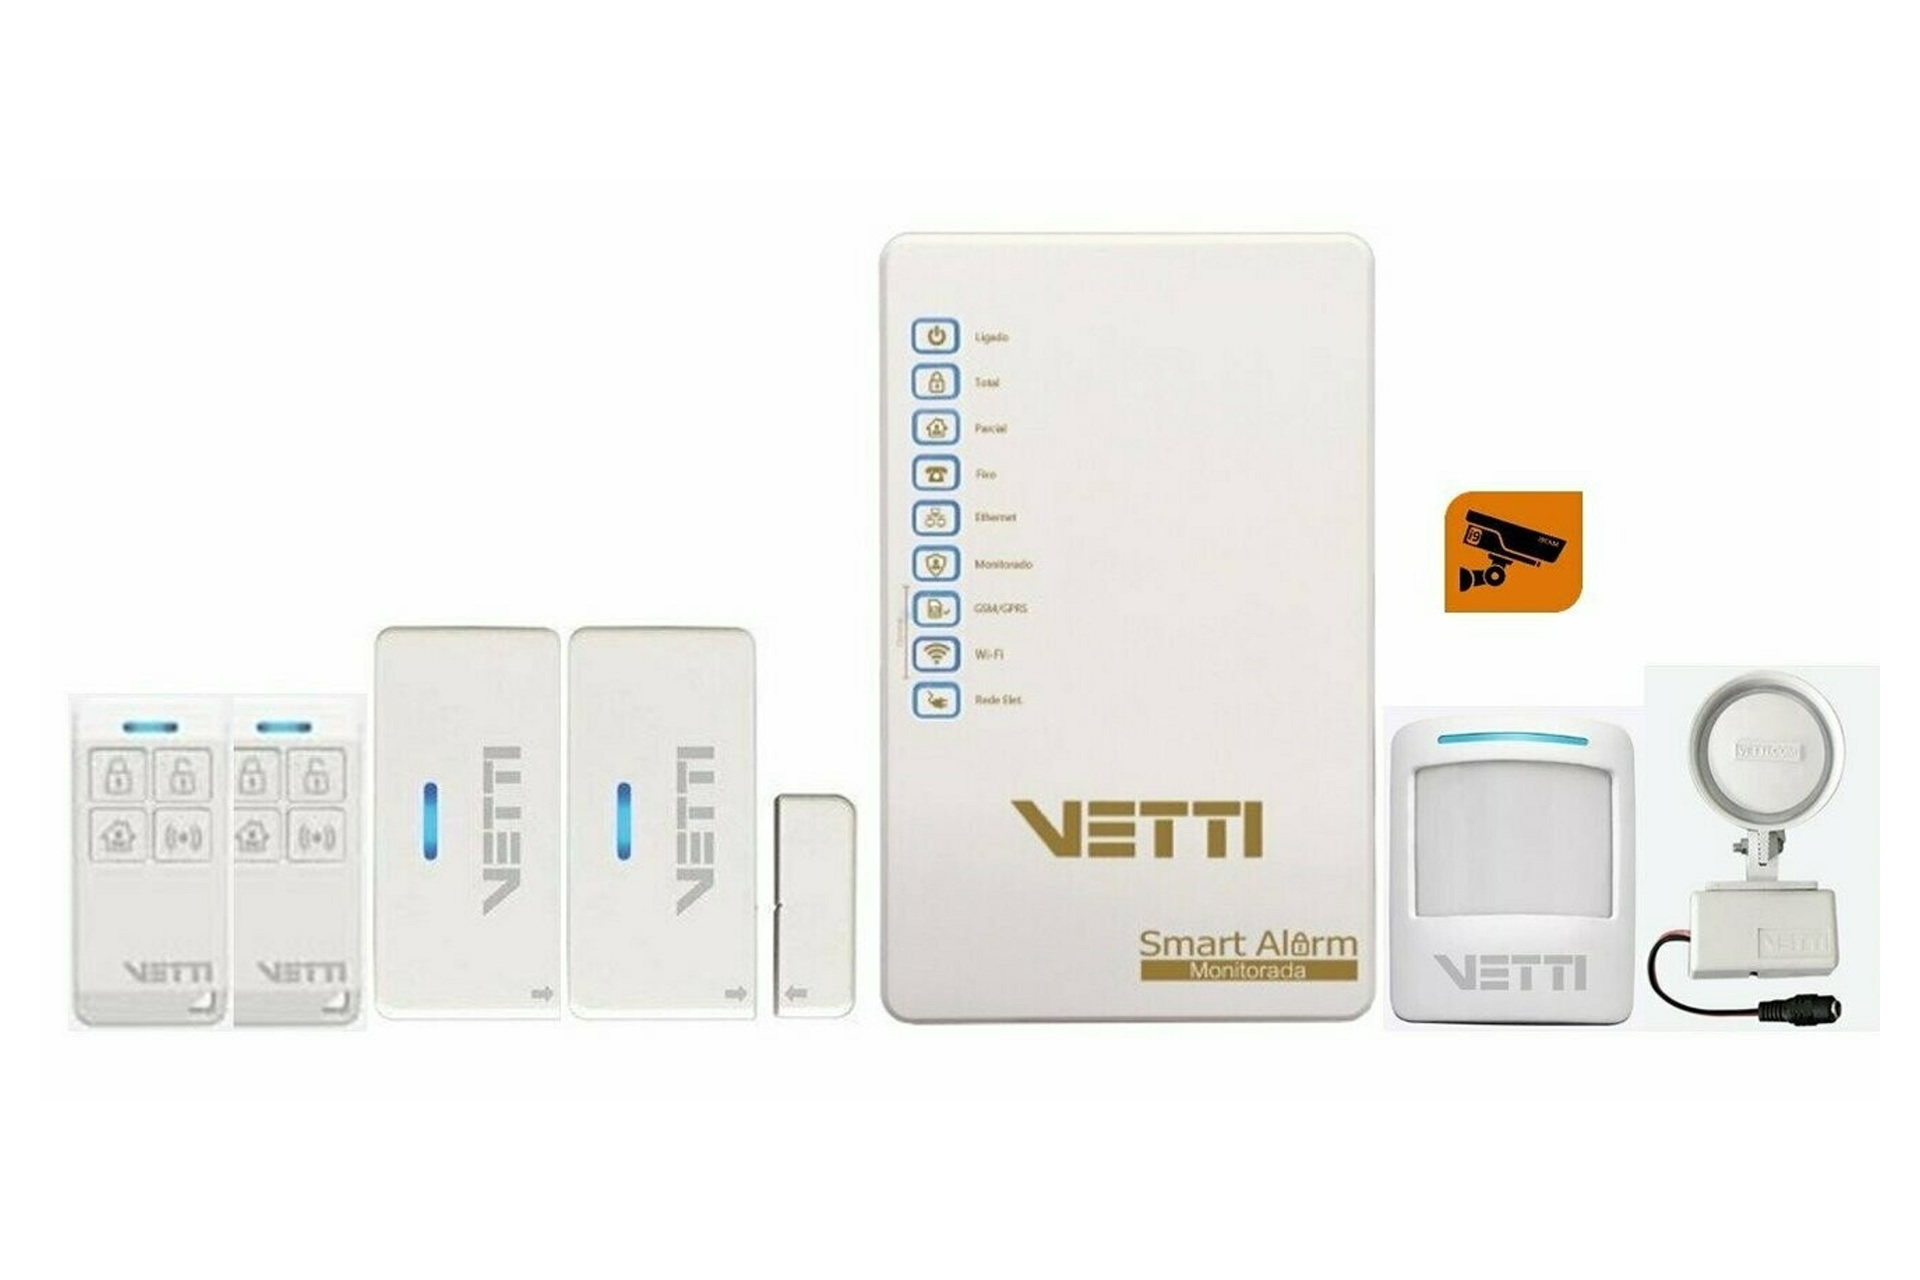 Vetti lança duas ferramentas para alarmes sem fio na Exposec Virtual